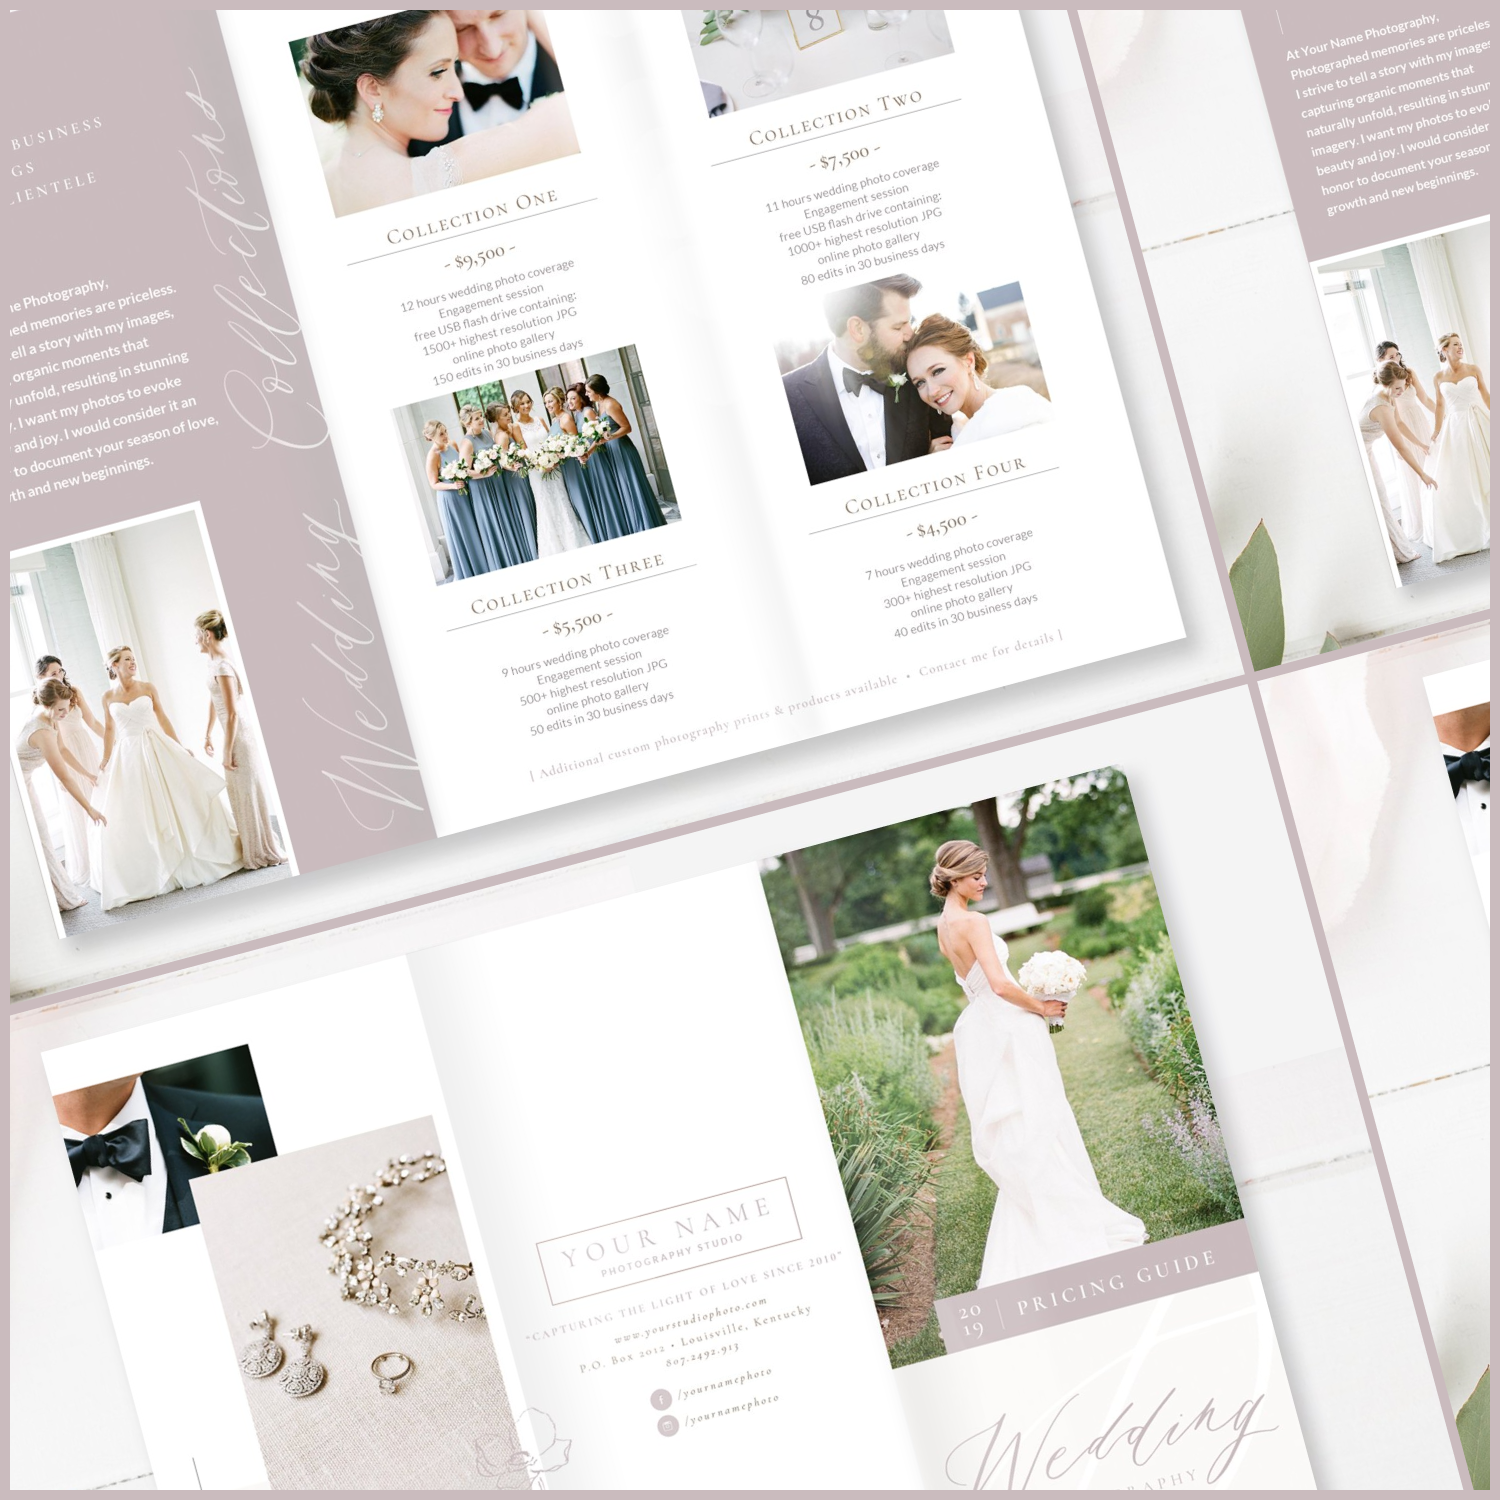 Prints of wedding photography brochure.